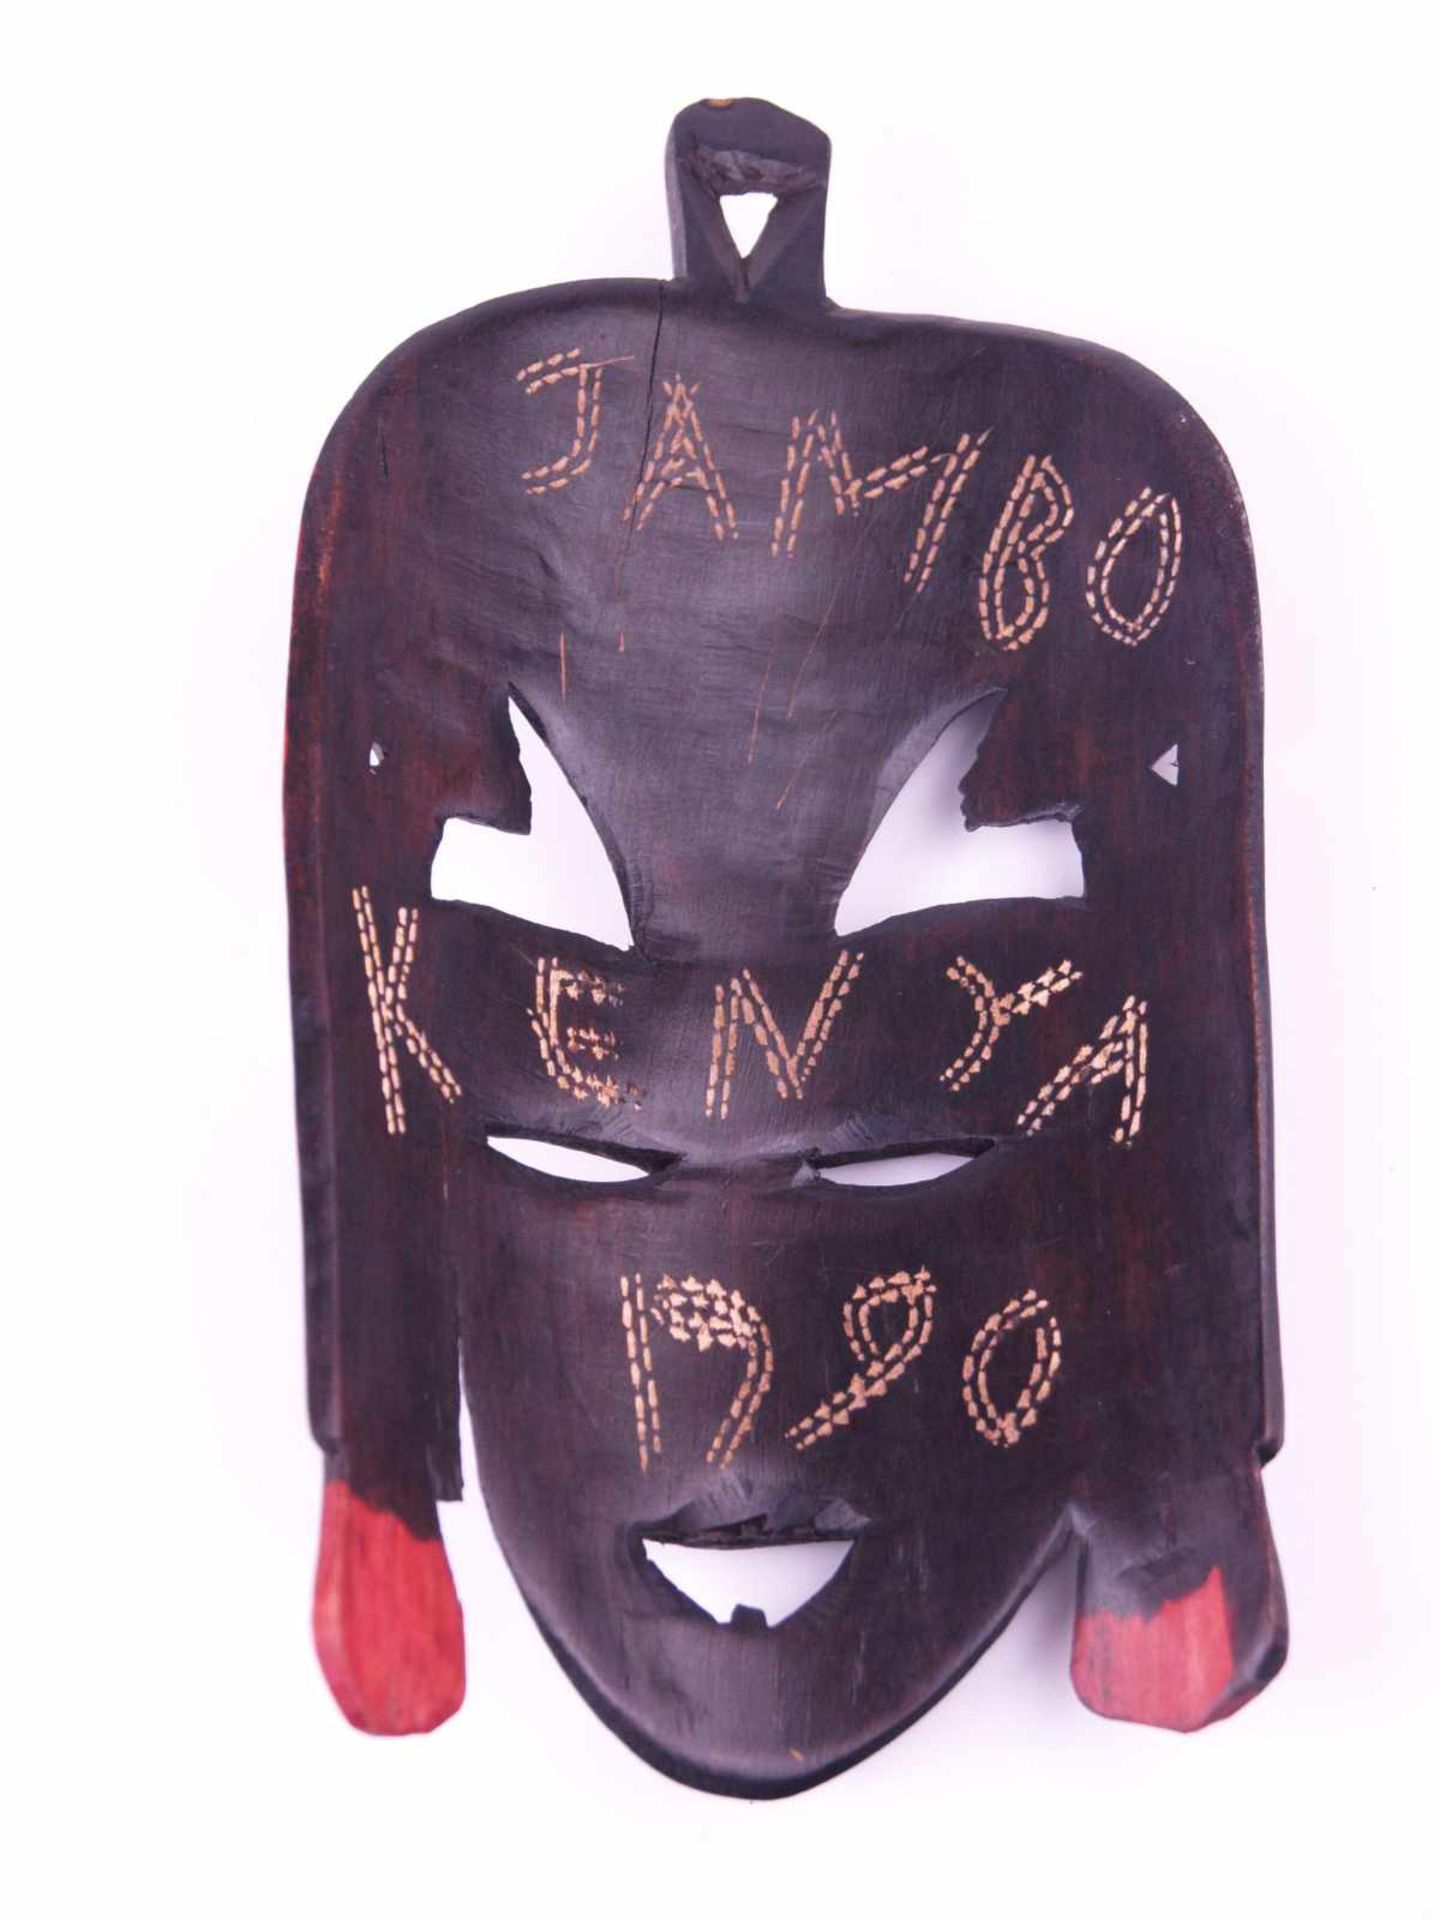 Gesichtsmaske- Kenia, Holz geschnitzt, schwarz/rot bemalt, rückseitig im Schnitt bez. "Jambo Kenya - Bild 4 aus 4